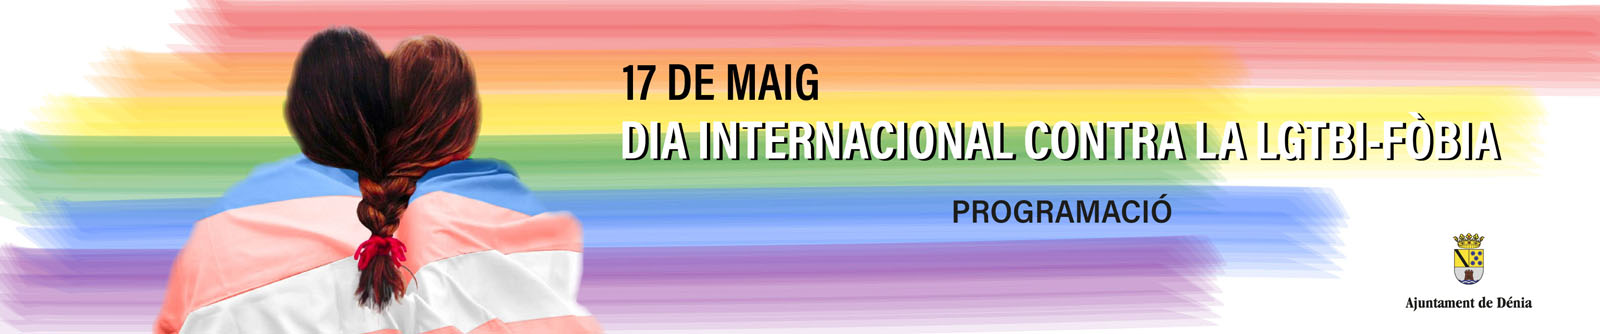 17M Dia Internacional contra la LGTBI-Fòbia